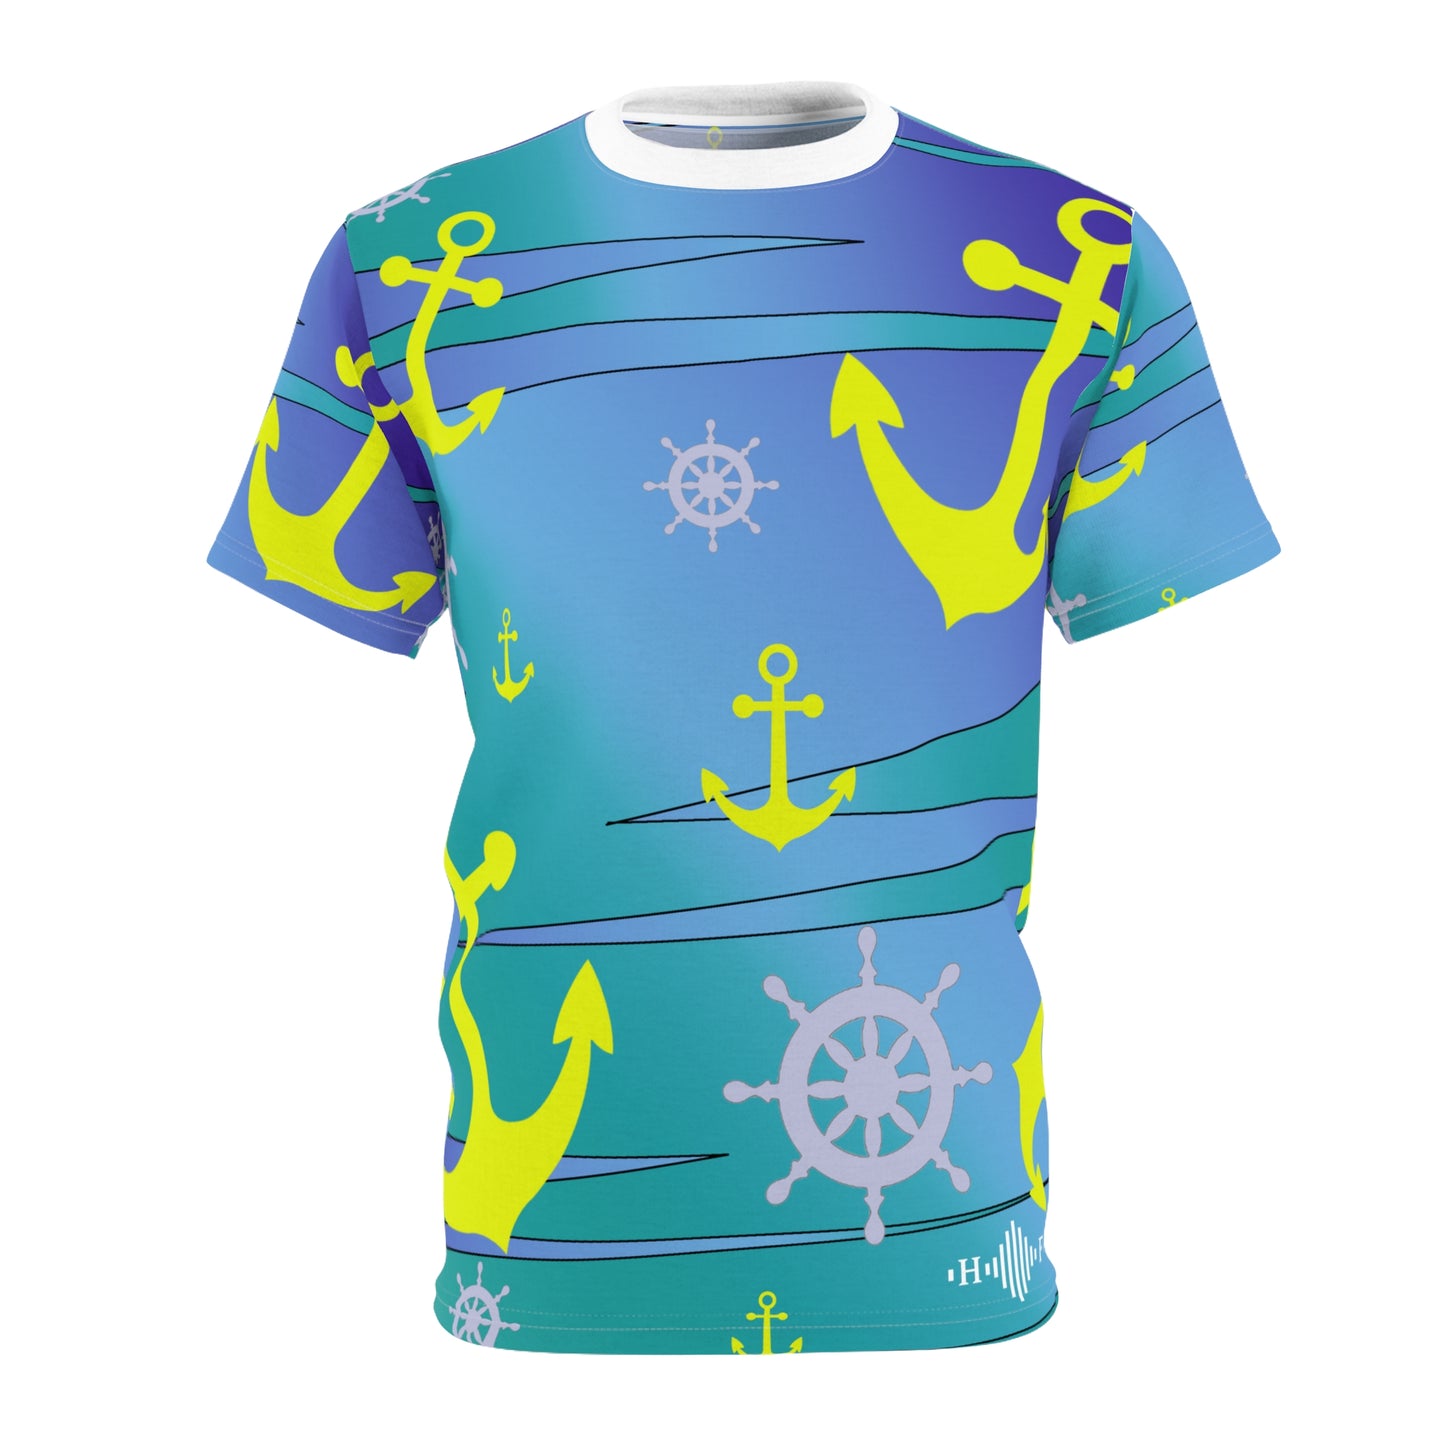 Anchors Ahoy - T-shirt confort